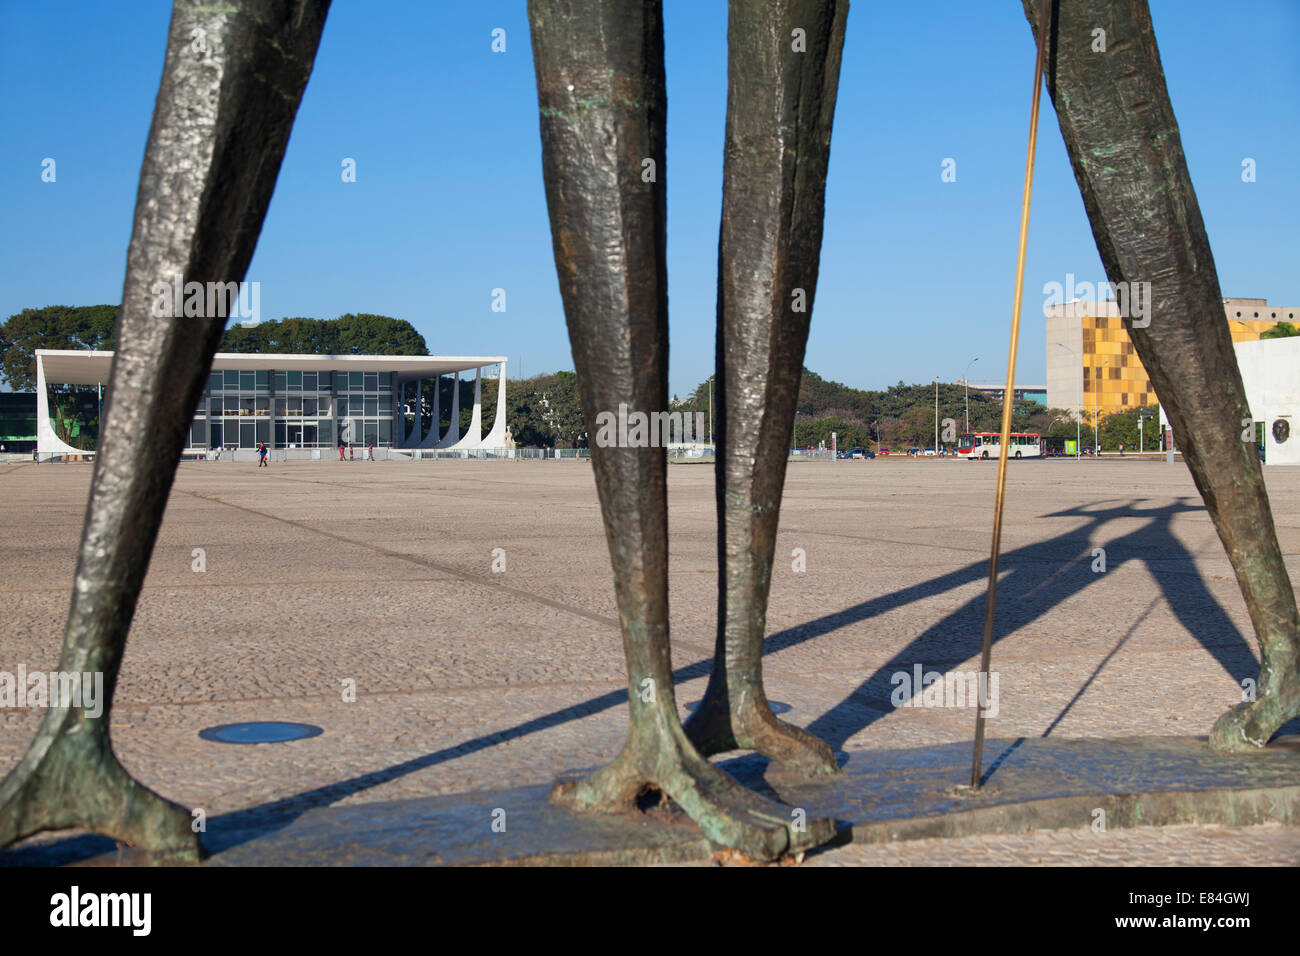 Cour suprême fédérale et dois Candangos (deux ouvriers) sculpture en trois pouvoirs Square, Brasilia, Brésil, District Fédéral Banque D'Images